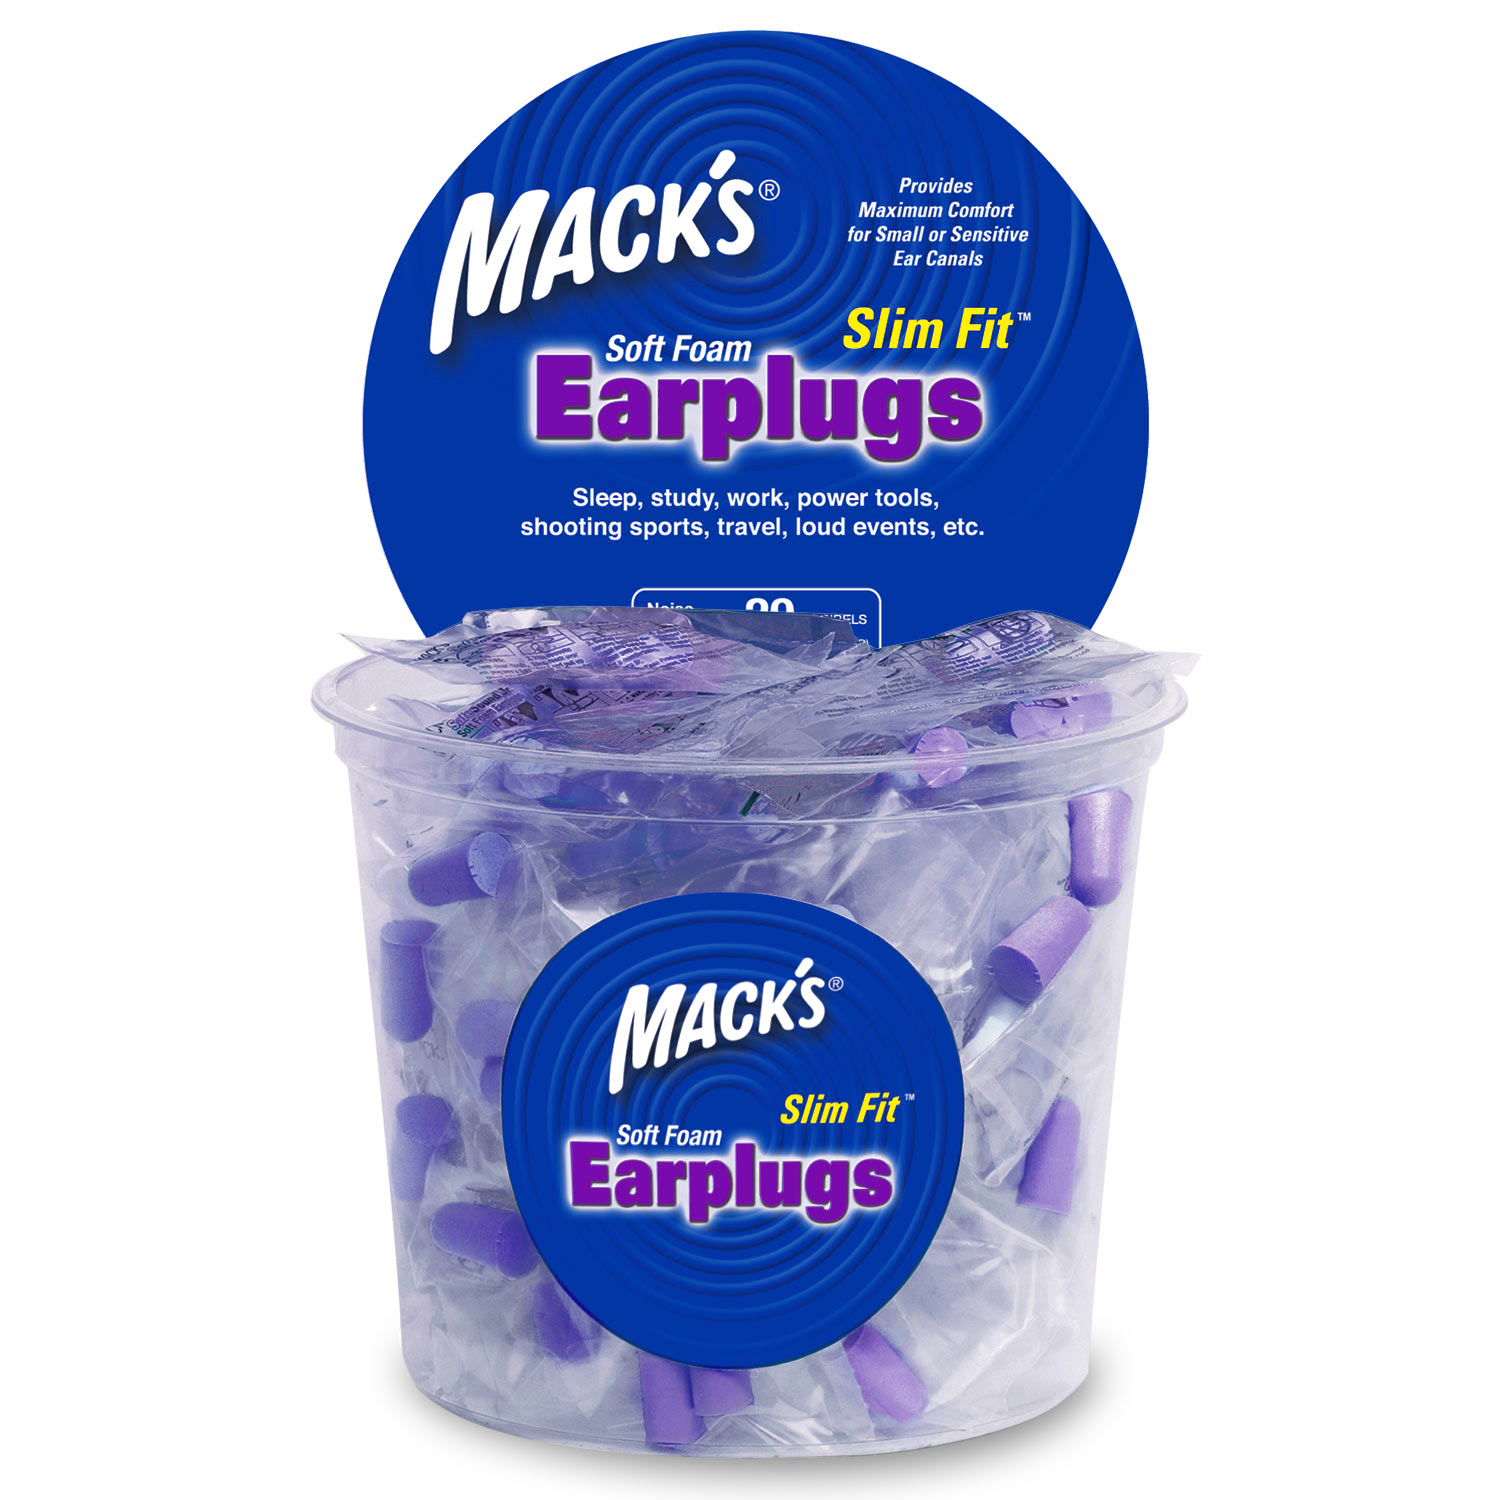 Macks Earplugs slim fit soft foam ear plugs for small ears